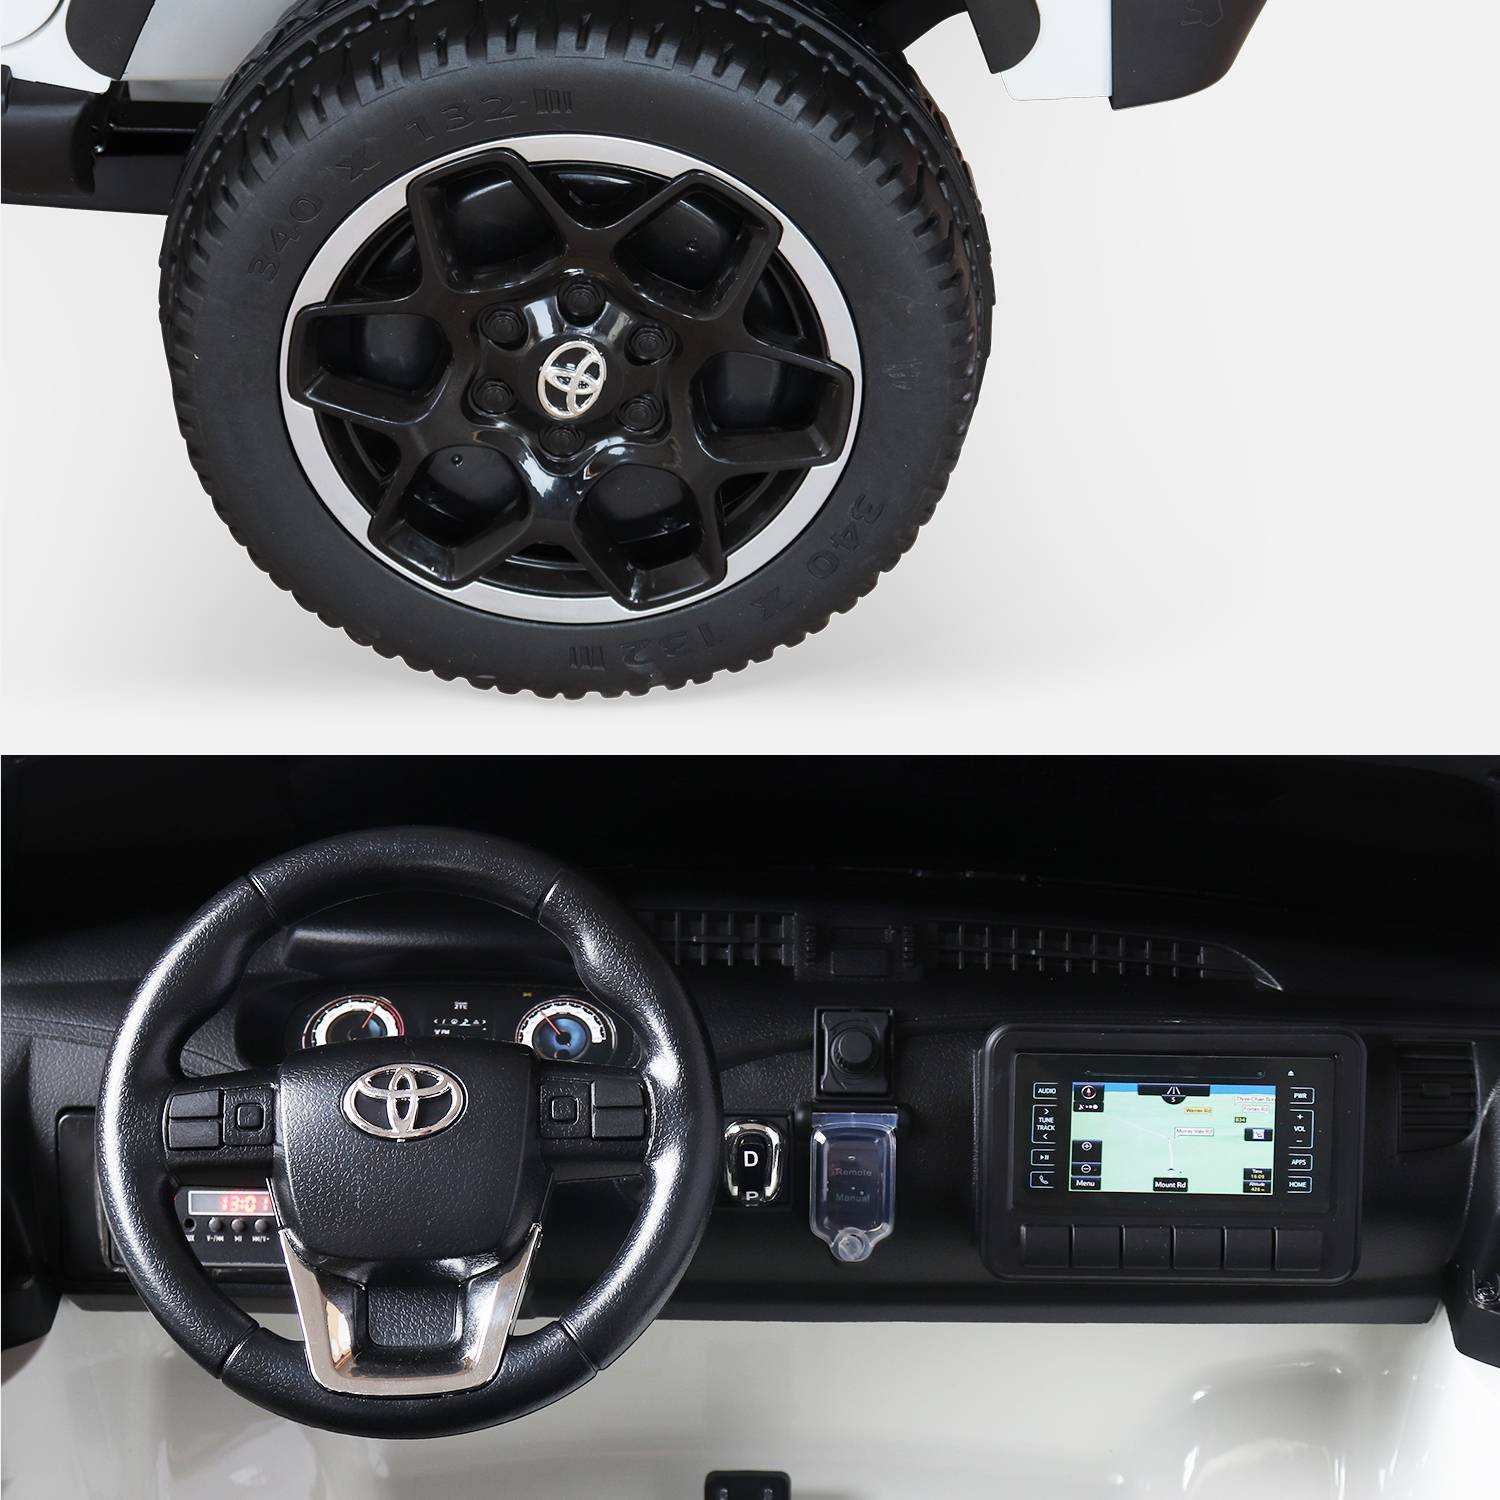 TOYOTA Hilux 2 roues motrices blanc, voiture électrique 12V, 2 places, pour enfants avec autoradio, télécommande, MP3, port USB / carte SD, prise jack et phares fonctionnels Photo7